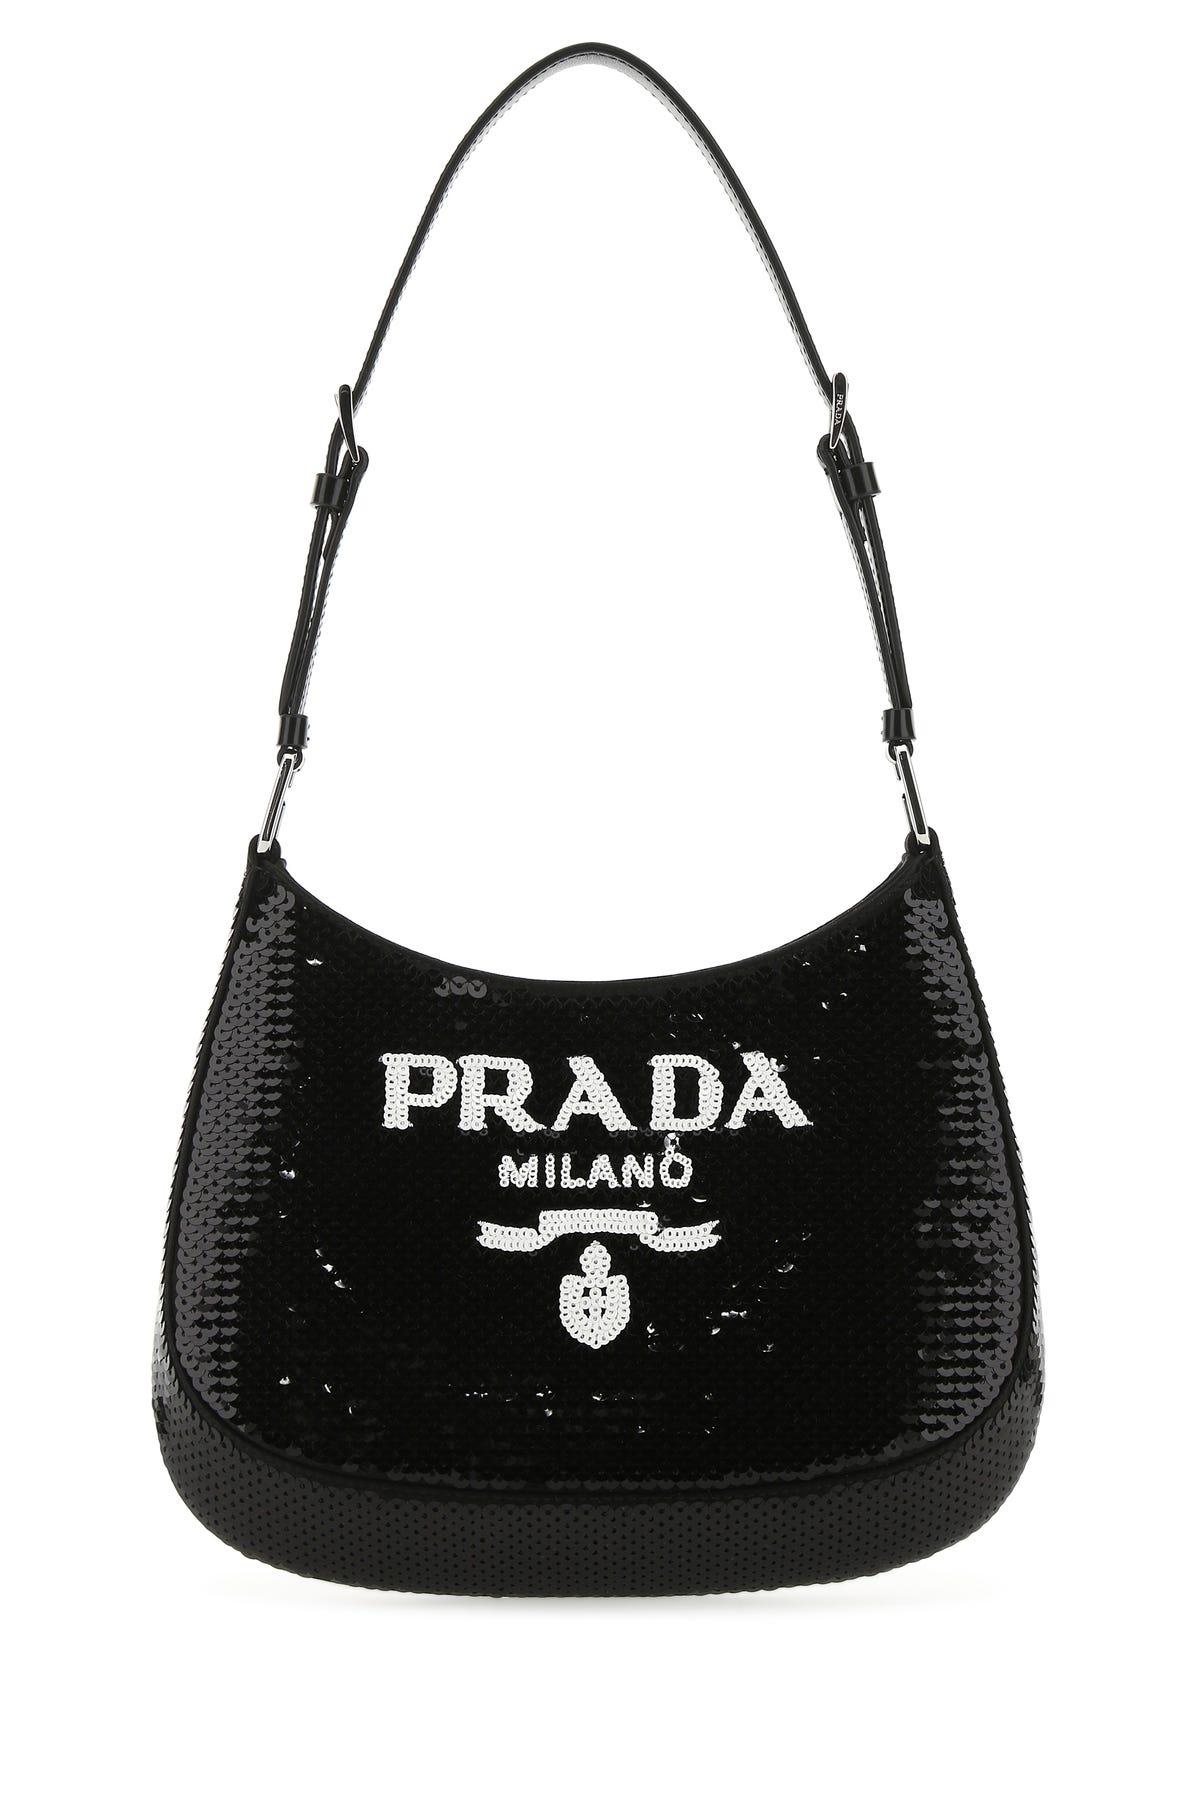 Prada Leather Embellished Fabric Cleo Shoulder Bag in Black | Lyst